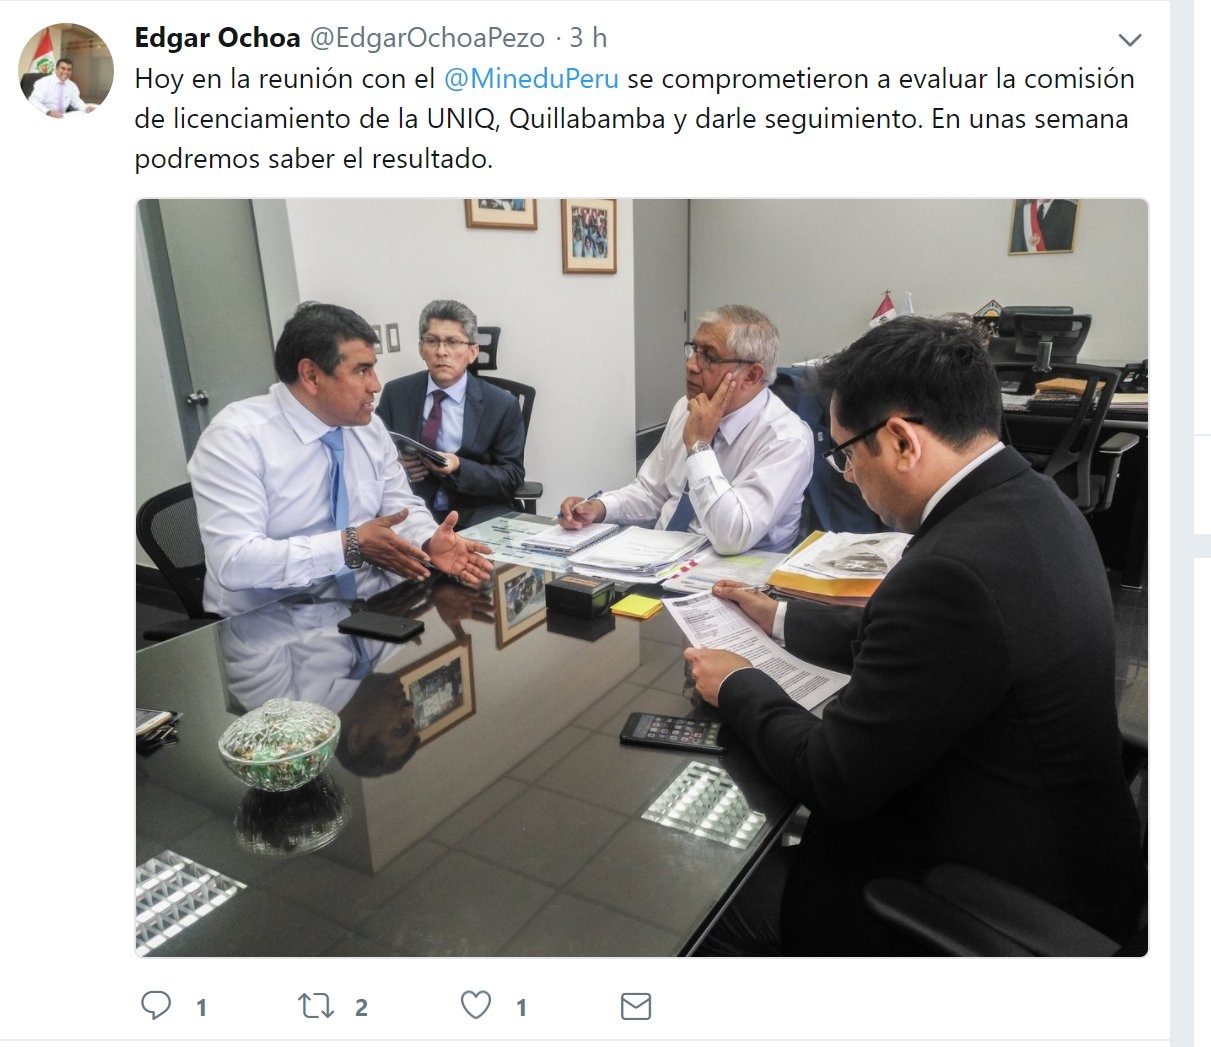 El señor de camisa blanca y canas es Molinari, los demás son altos funcionarios del Minedu (sí, puros hombres). Este tuit fue borrado.  Imagen: captura Twitter